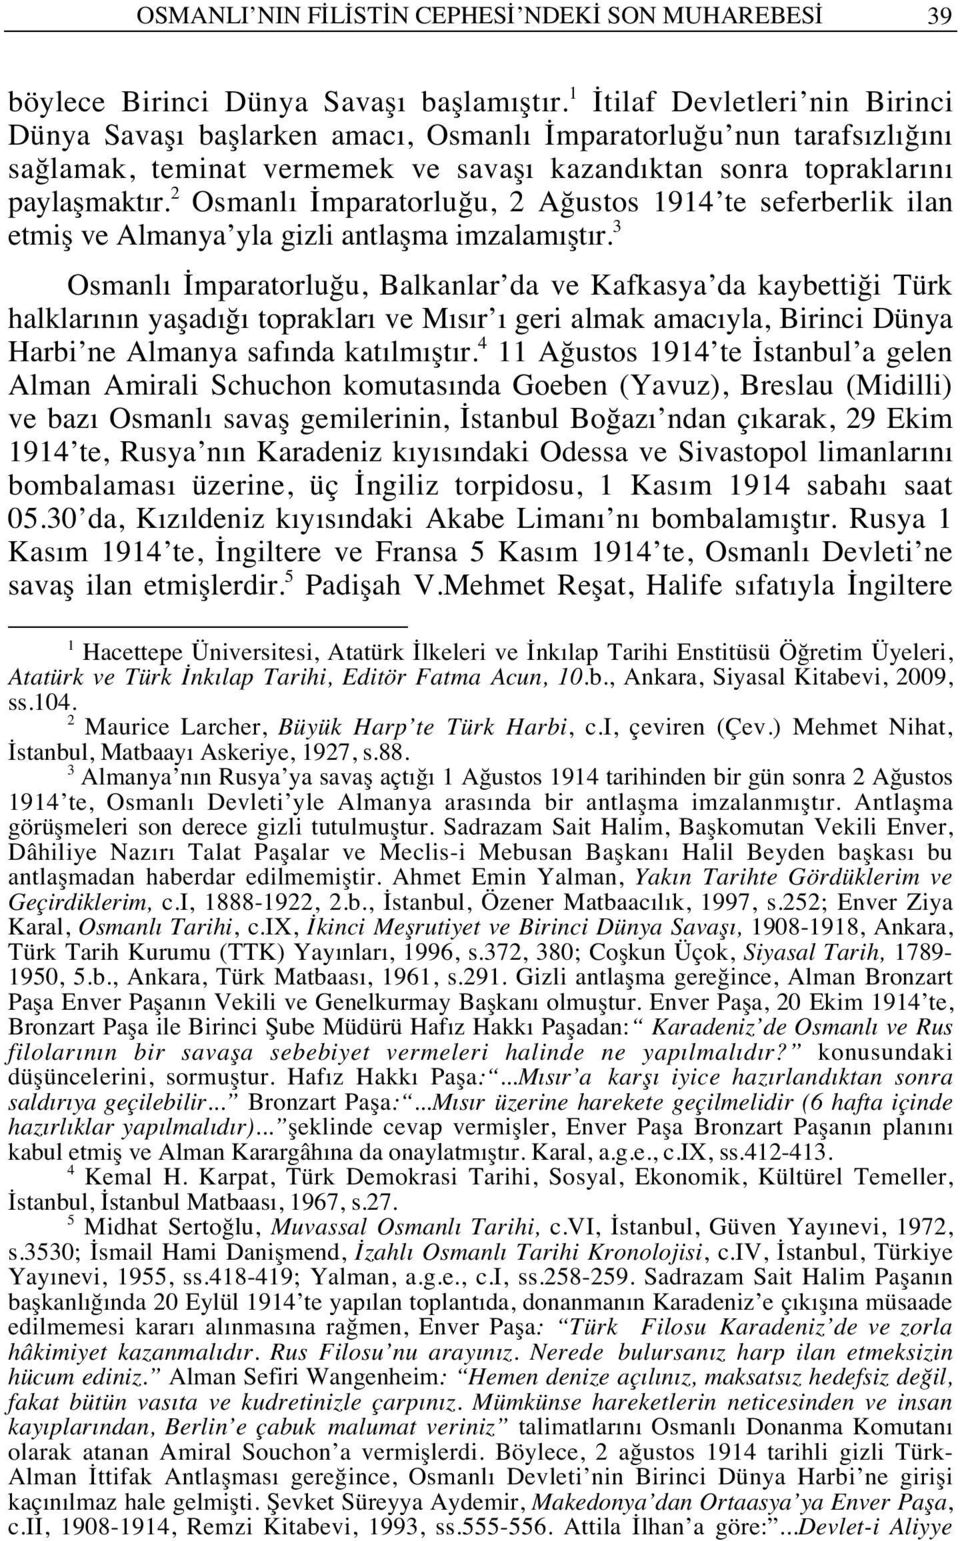 2 Osmanl İmparatorluğu, 2 Ağustos 1914 te seferberlik ilan etmiş ve Almanya yla gizli antlaşma imzalam şt r.